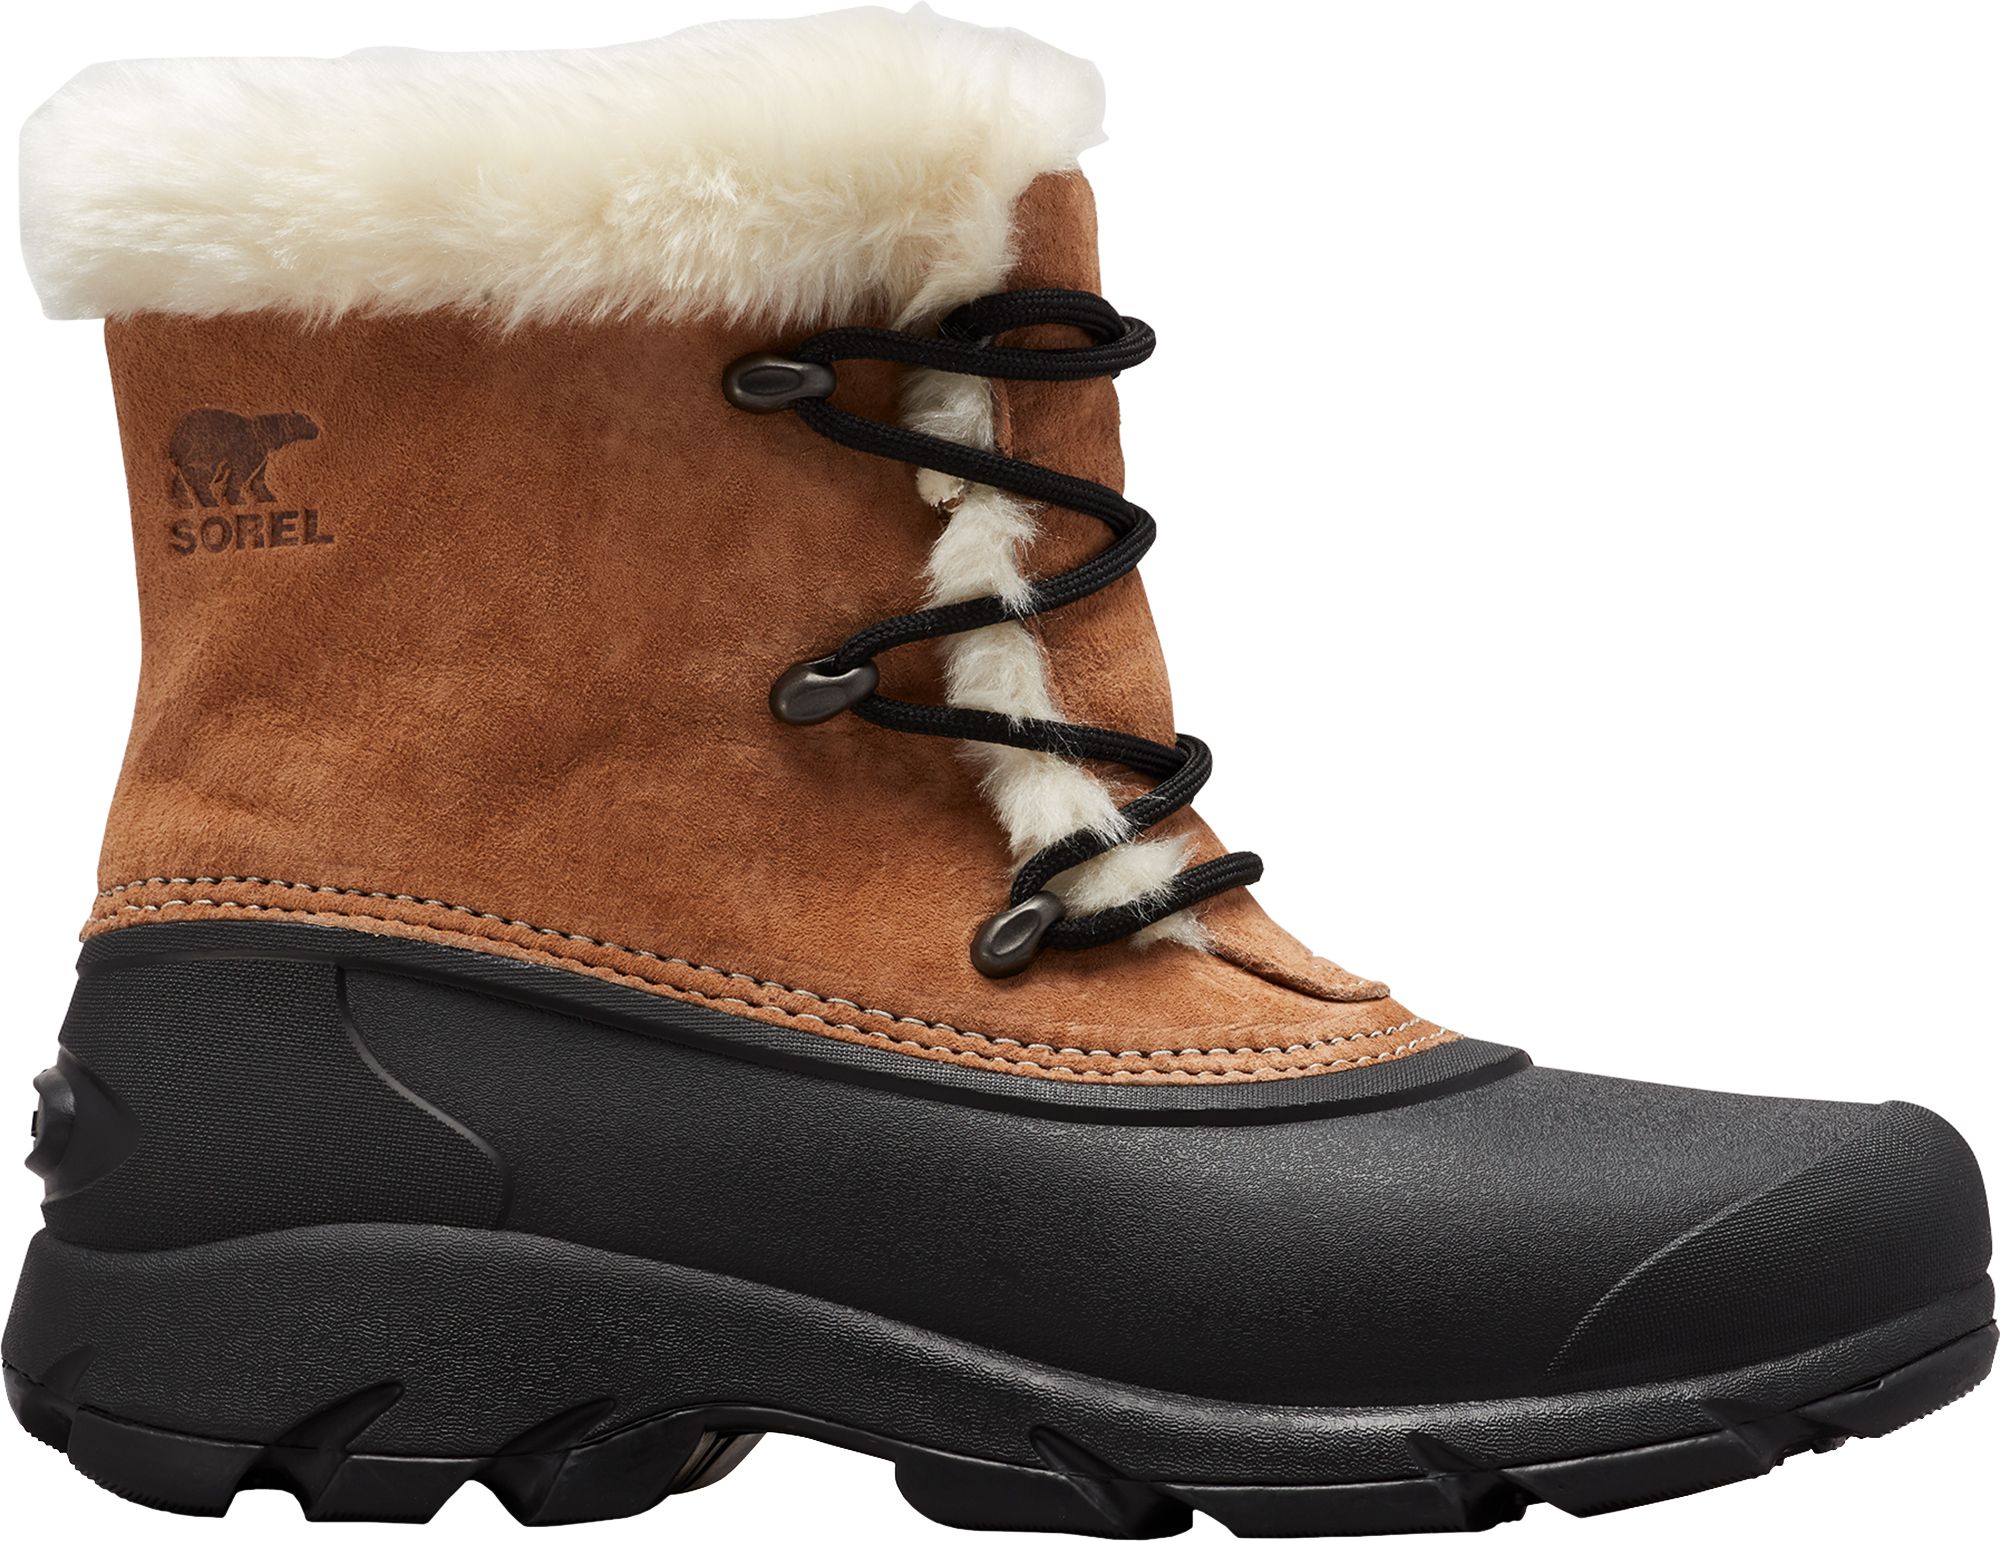 sorel waterproof winter boots